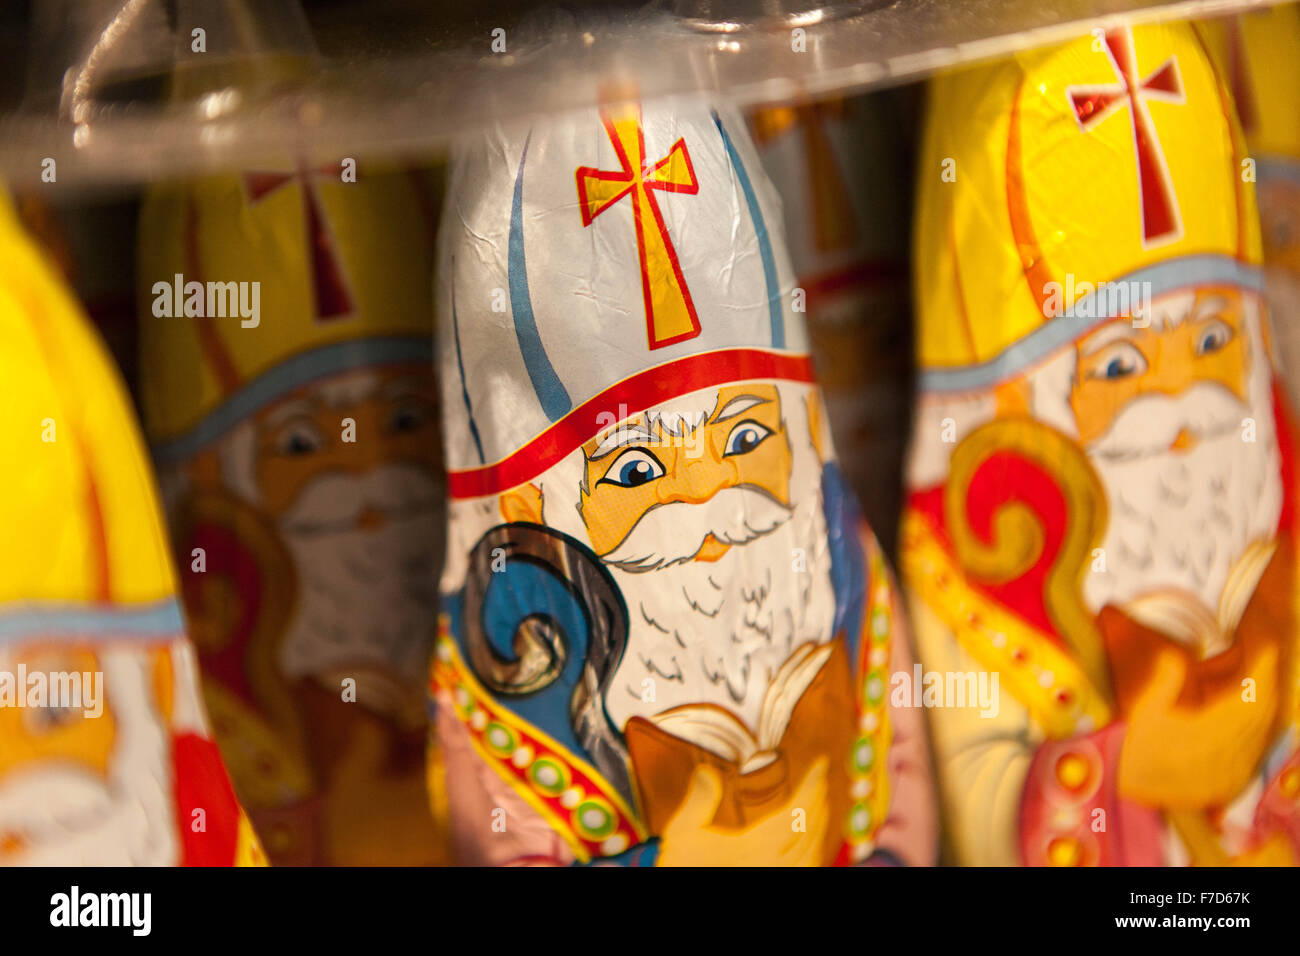 Schokoladen-Figuren des Heiligen Nikolaus in einem Supermarkt Regal angezeigt. Stockfoto